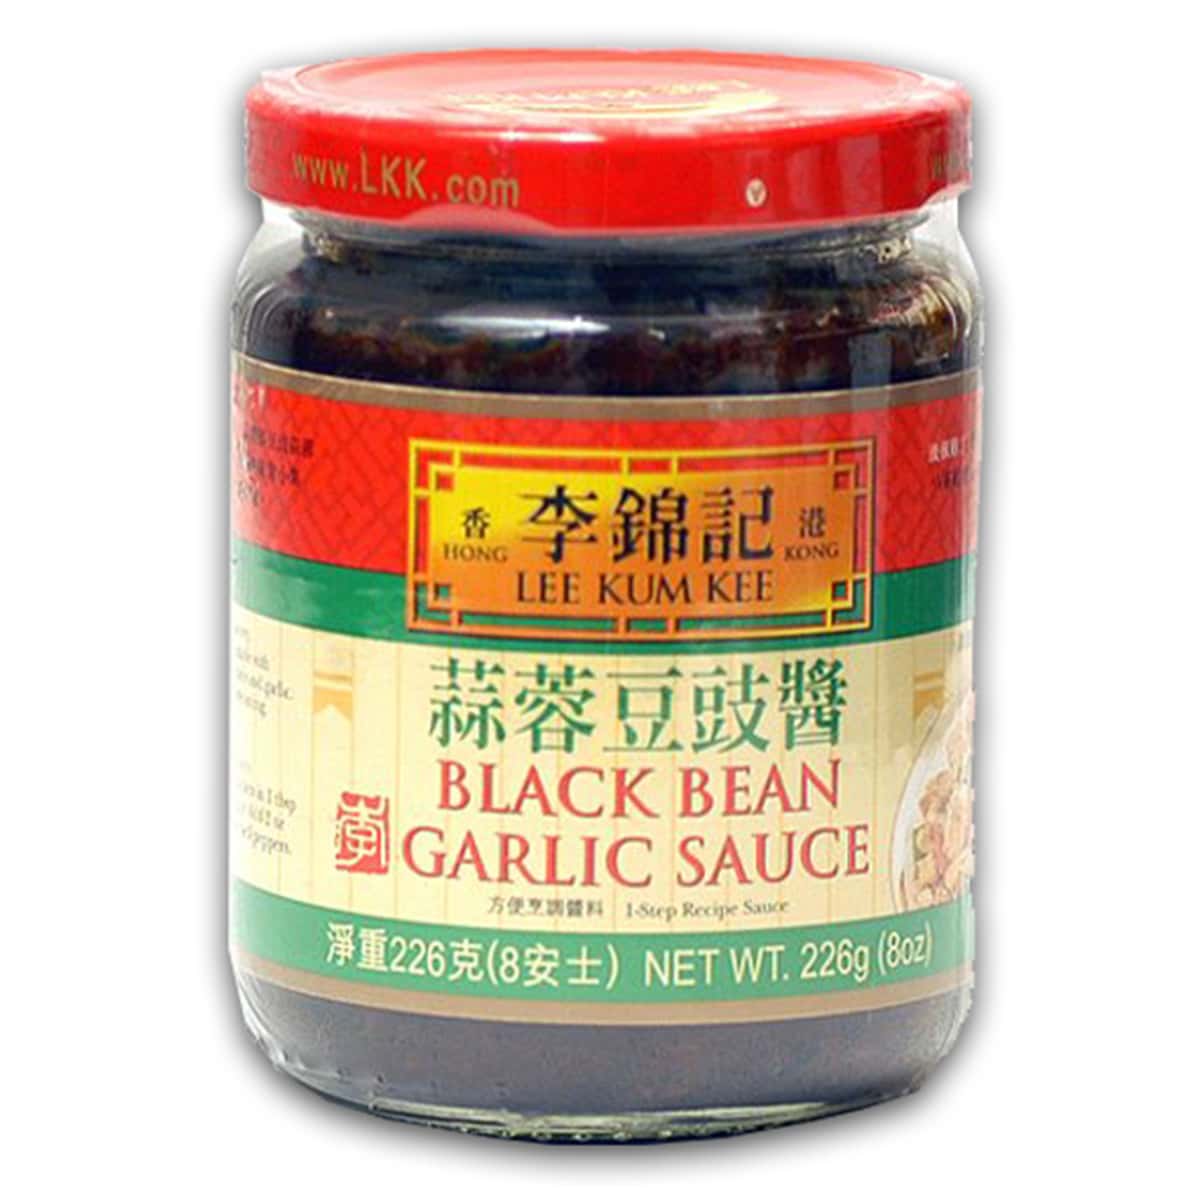 Buy Lee Kum Kee Black Bean Garlic Sauce - 226 gm